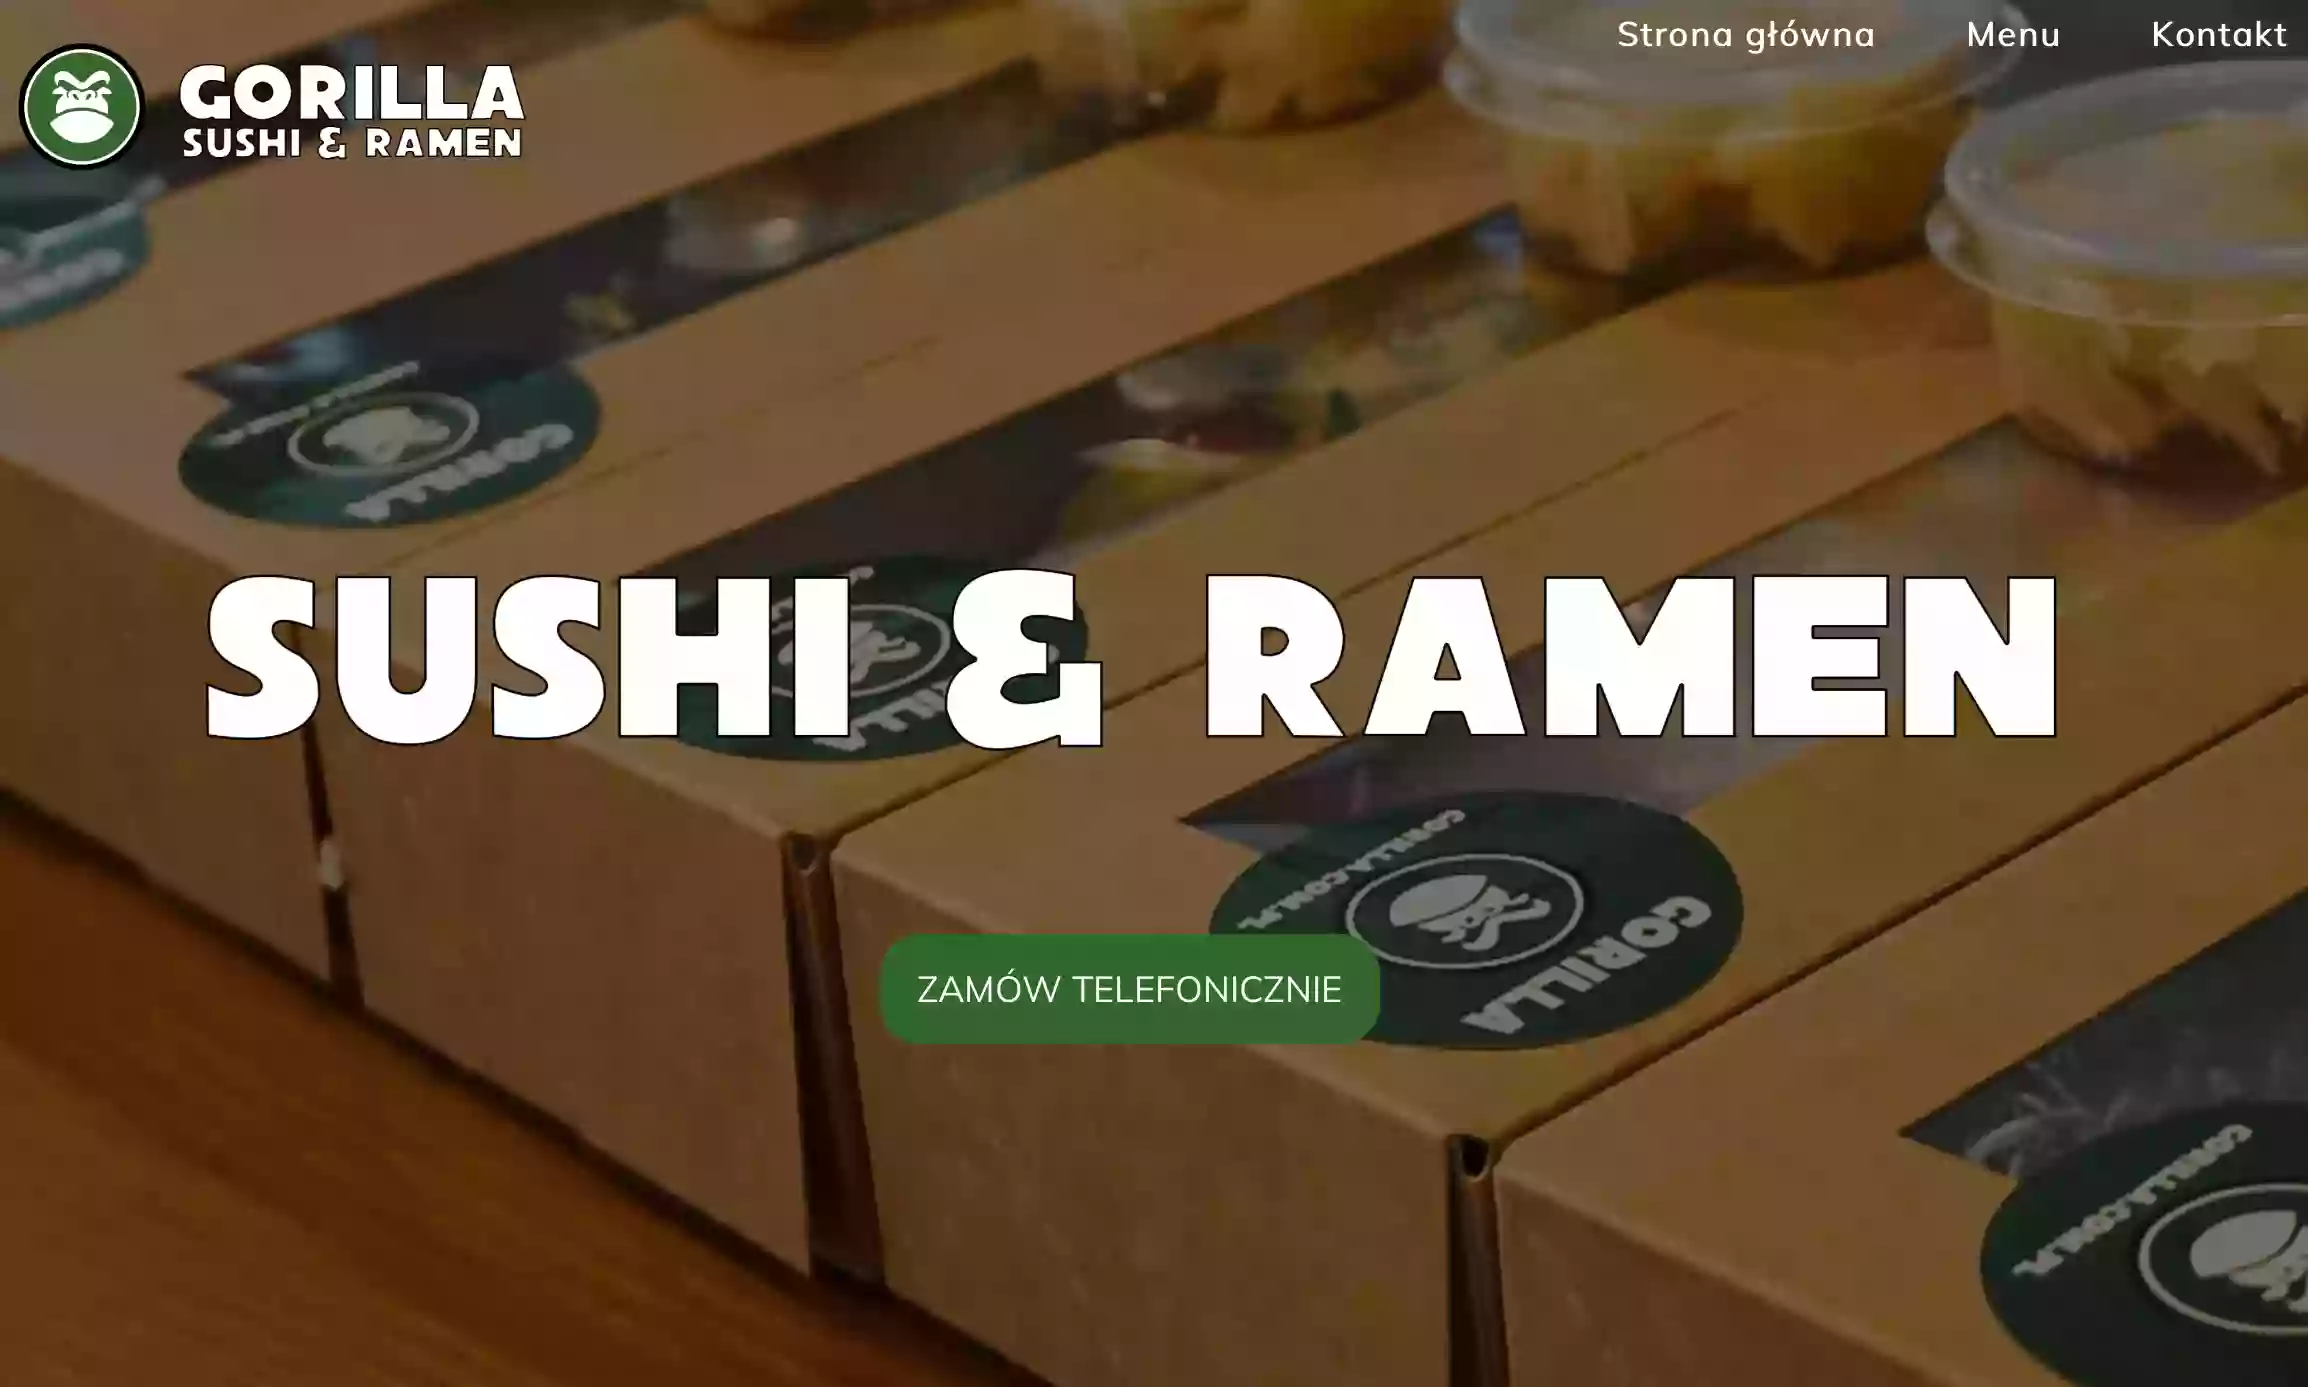 Gorilla Sushi & Ramen